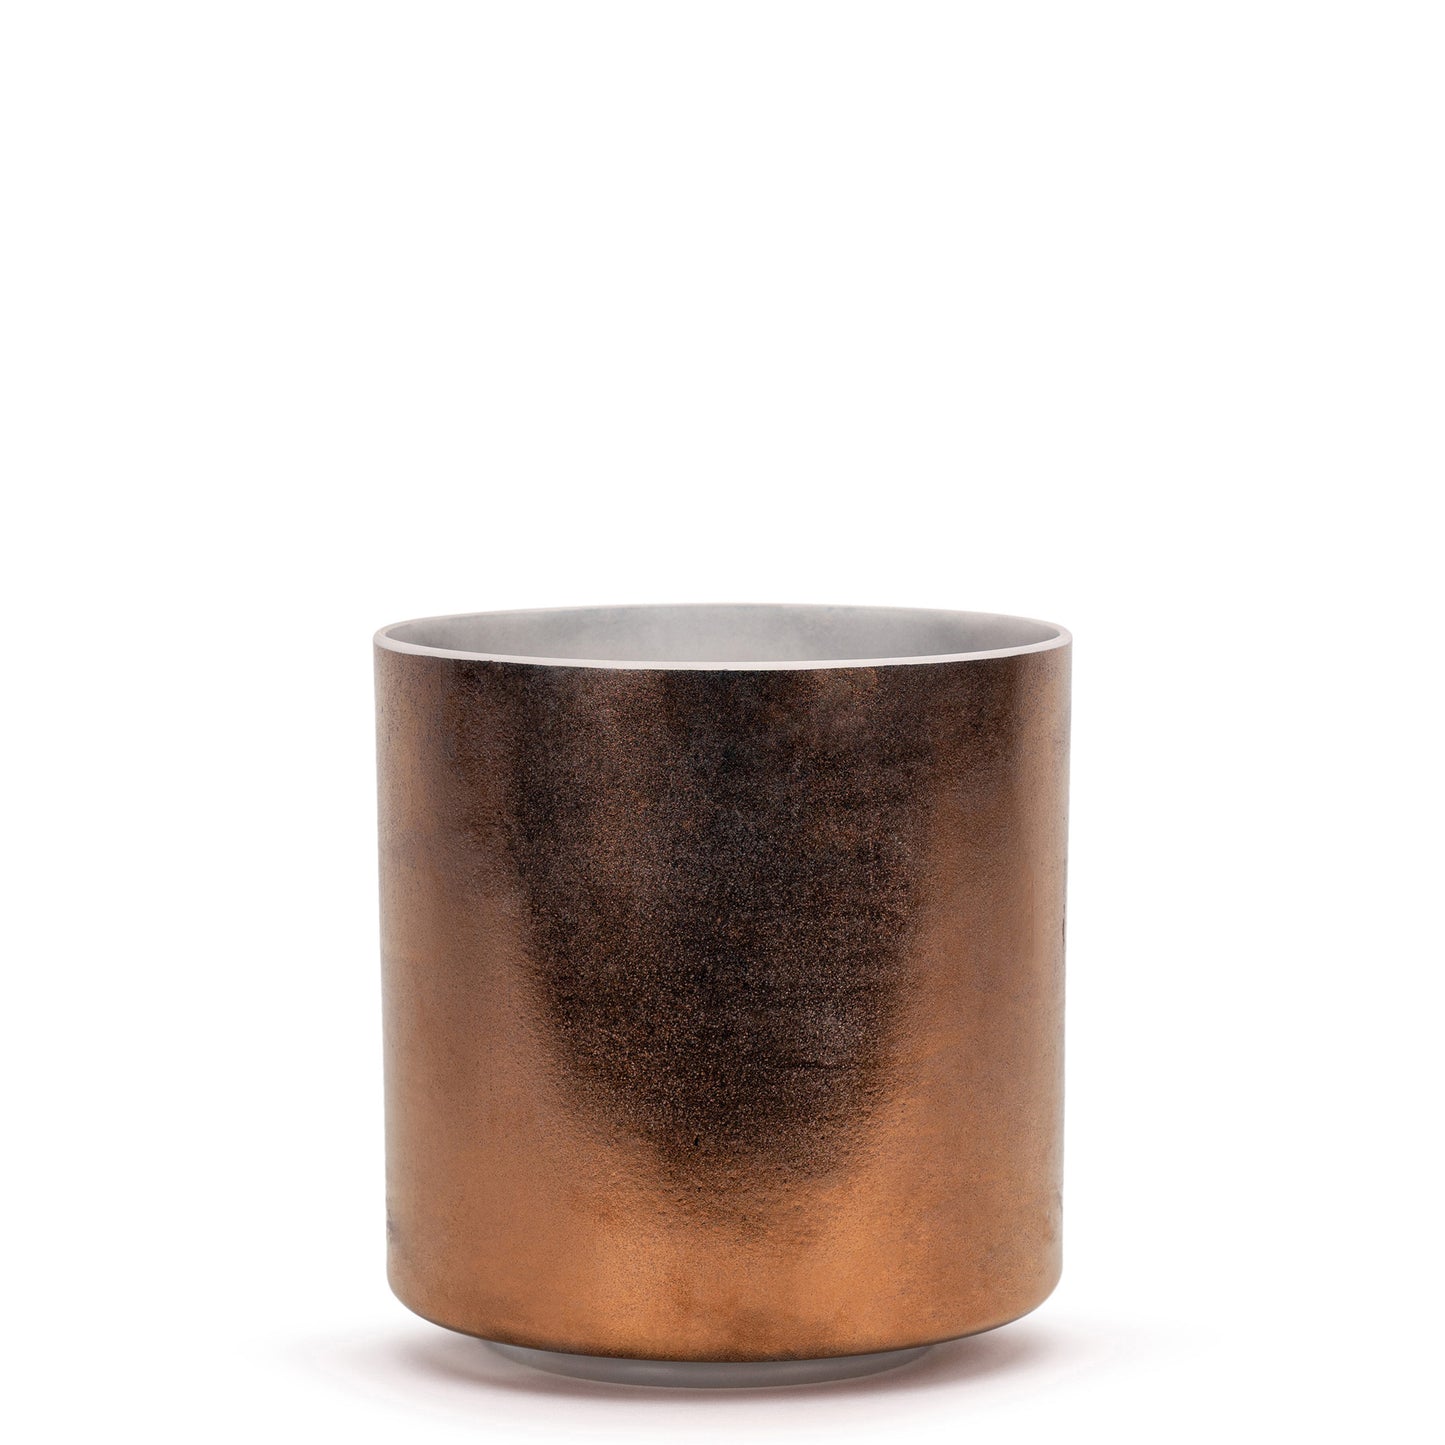 Tibetan Quartz Copper with Fire Element Bowl 8" D#-45